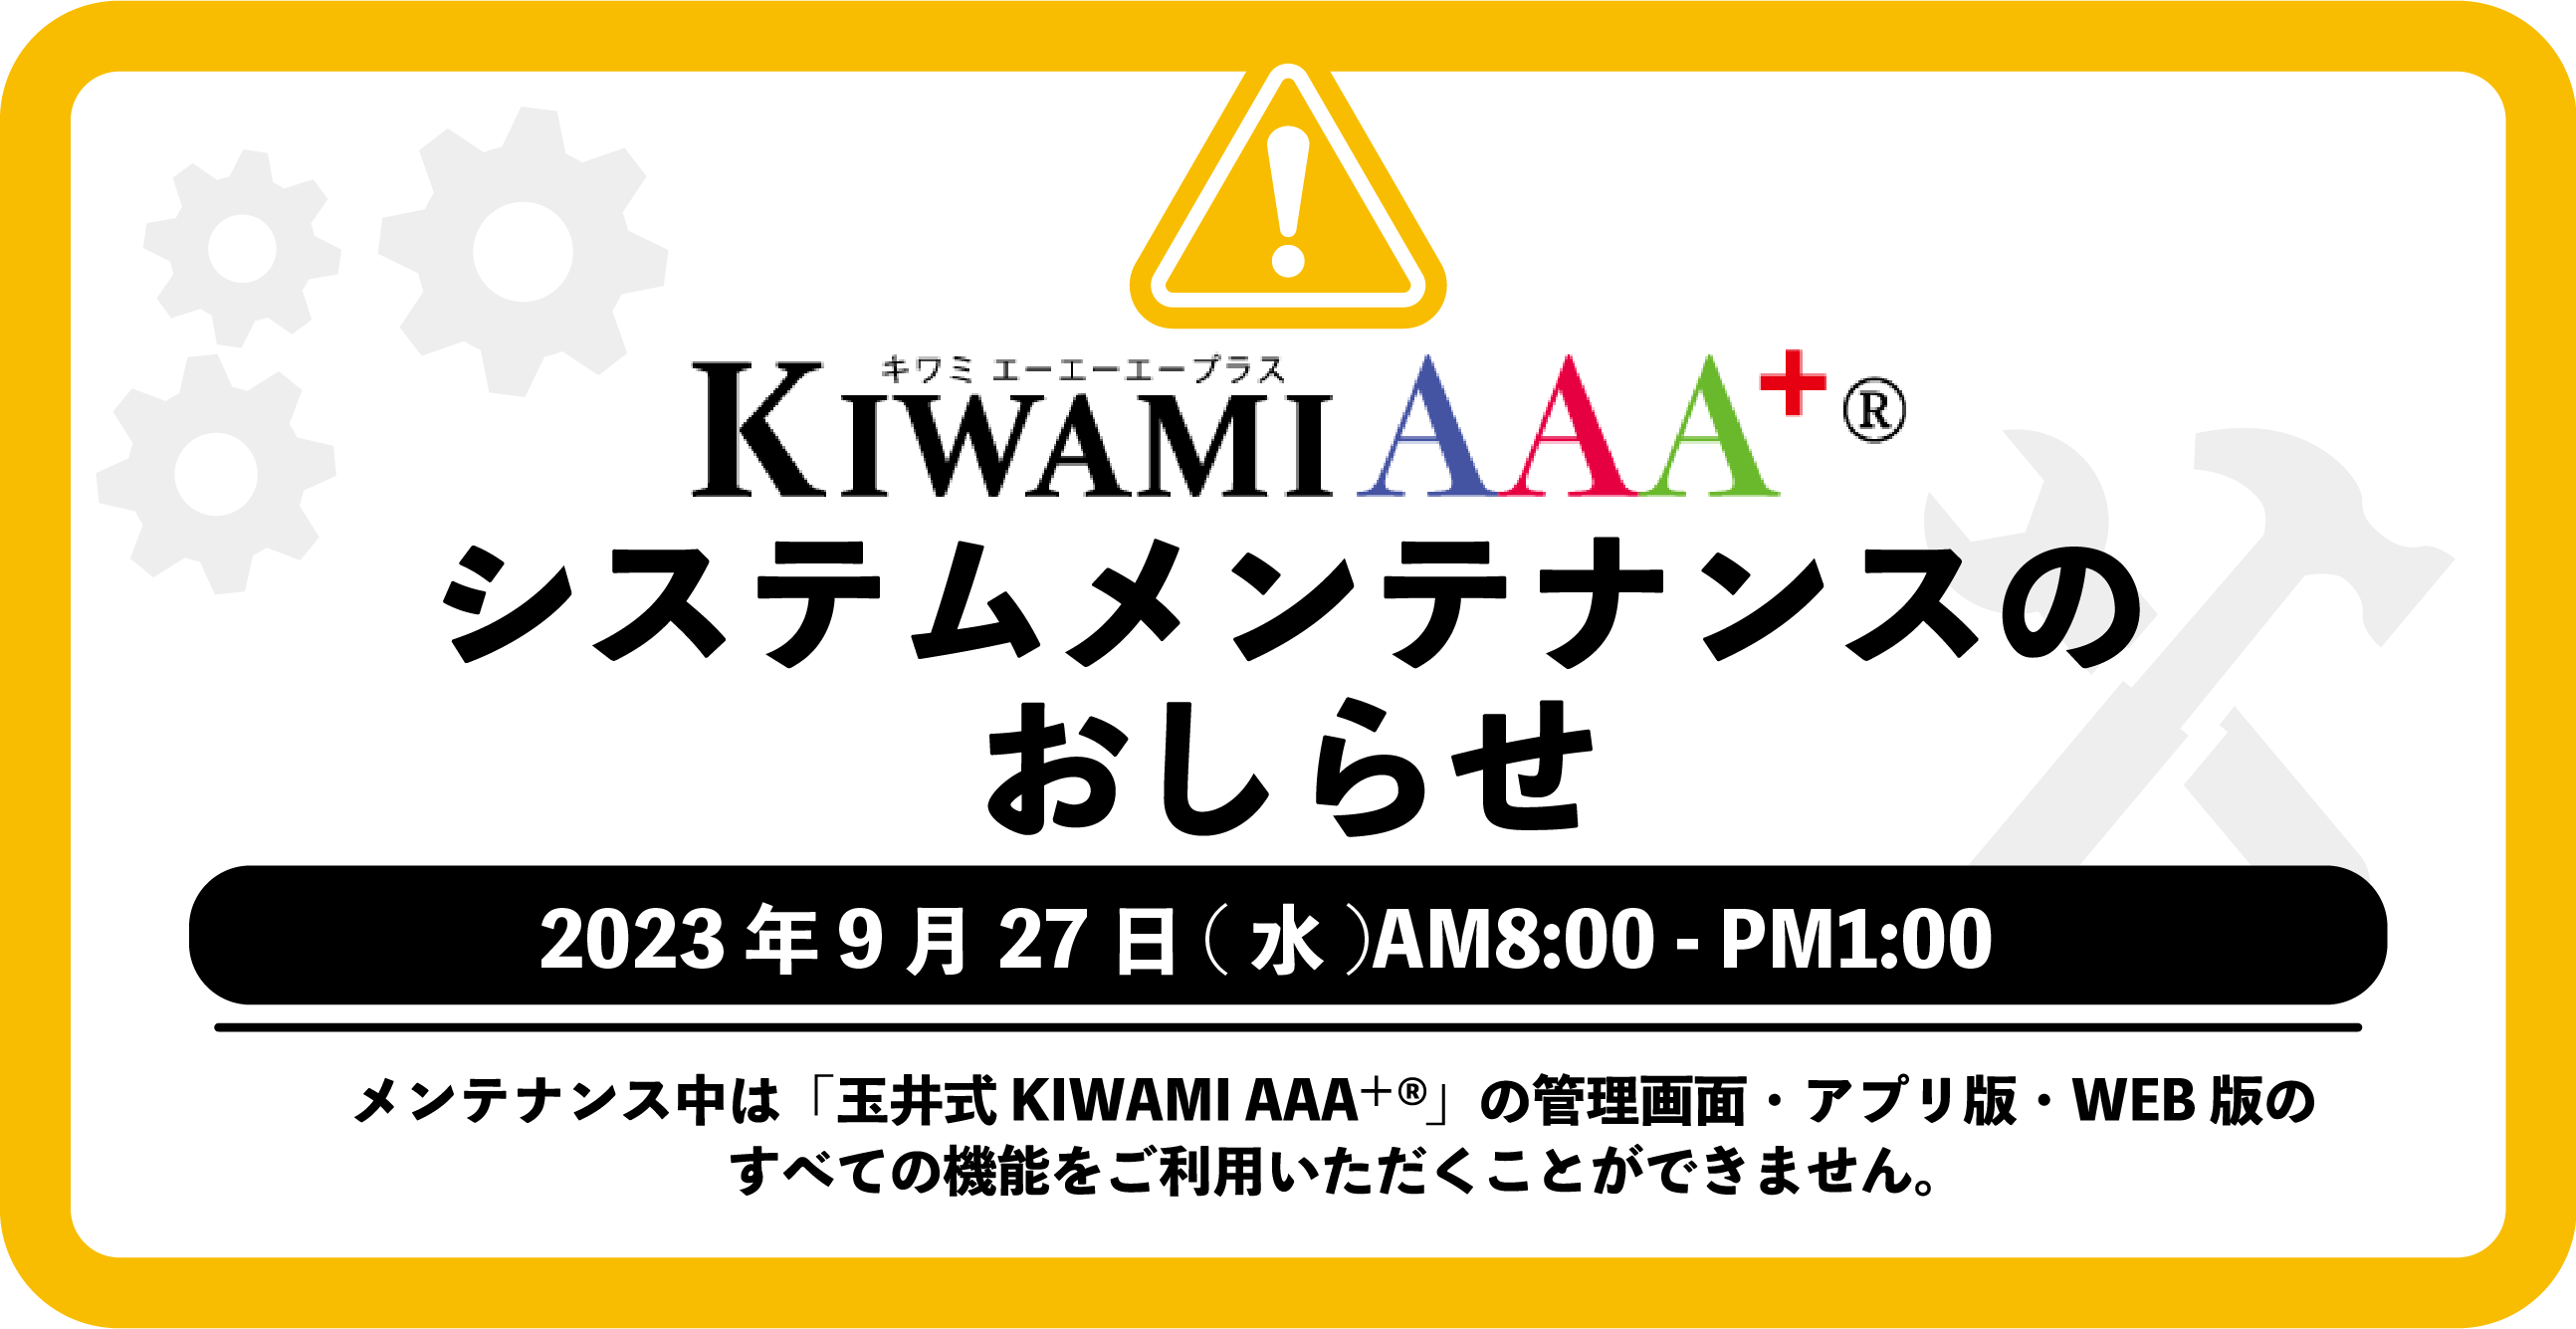 【9/27】「玉井式 KIWAMI AAA+」アップデートのお知らせ